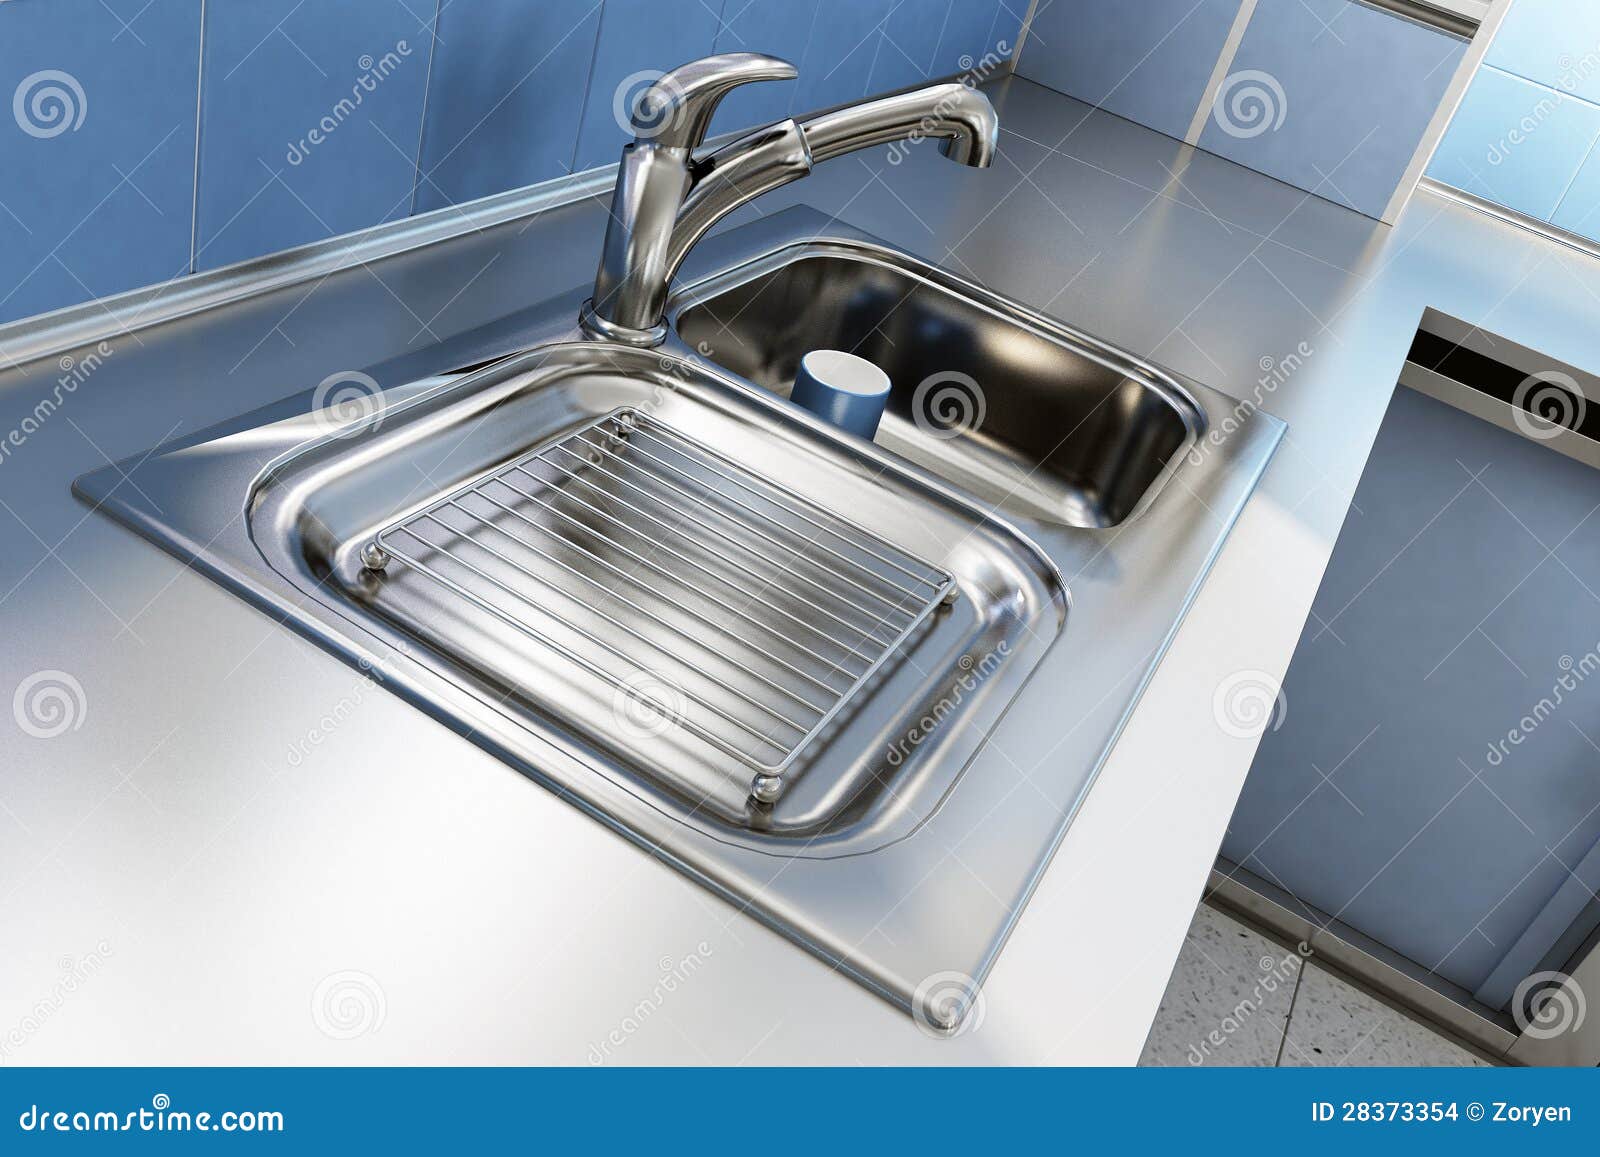 chrome kitchen sink